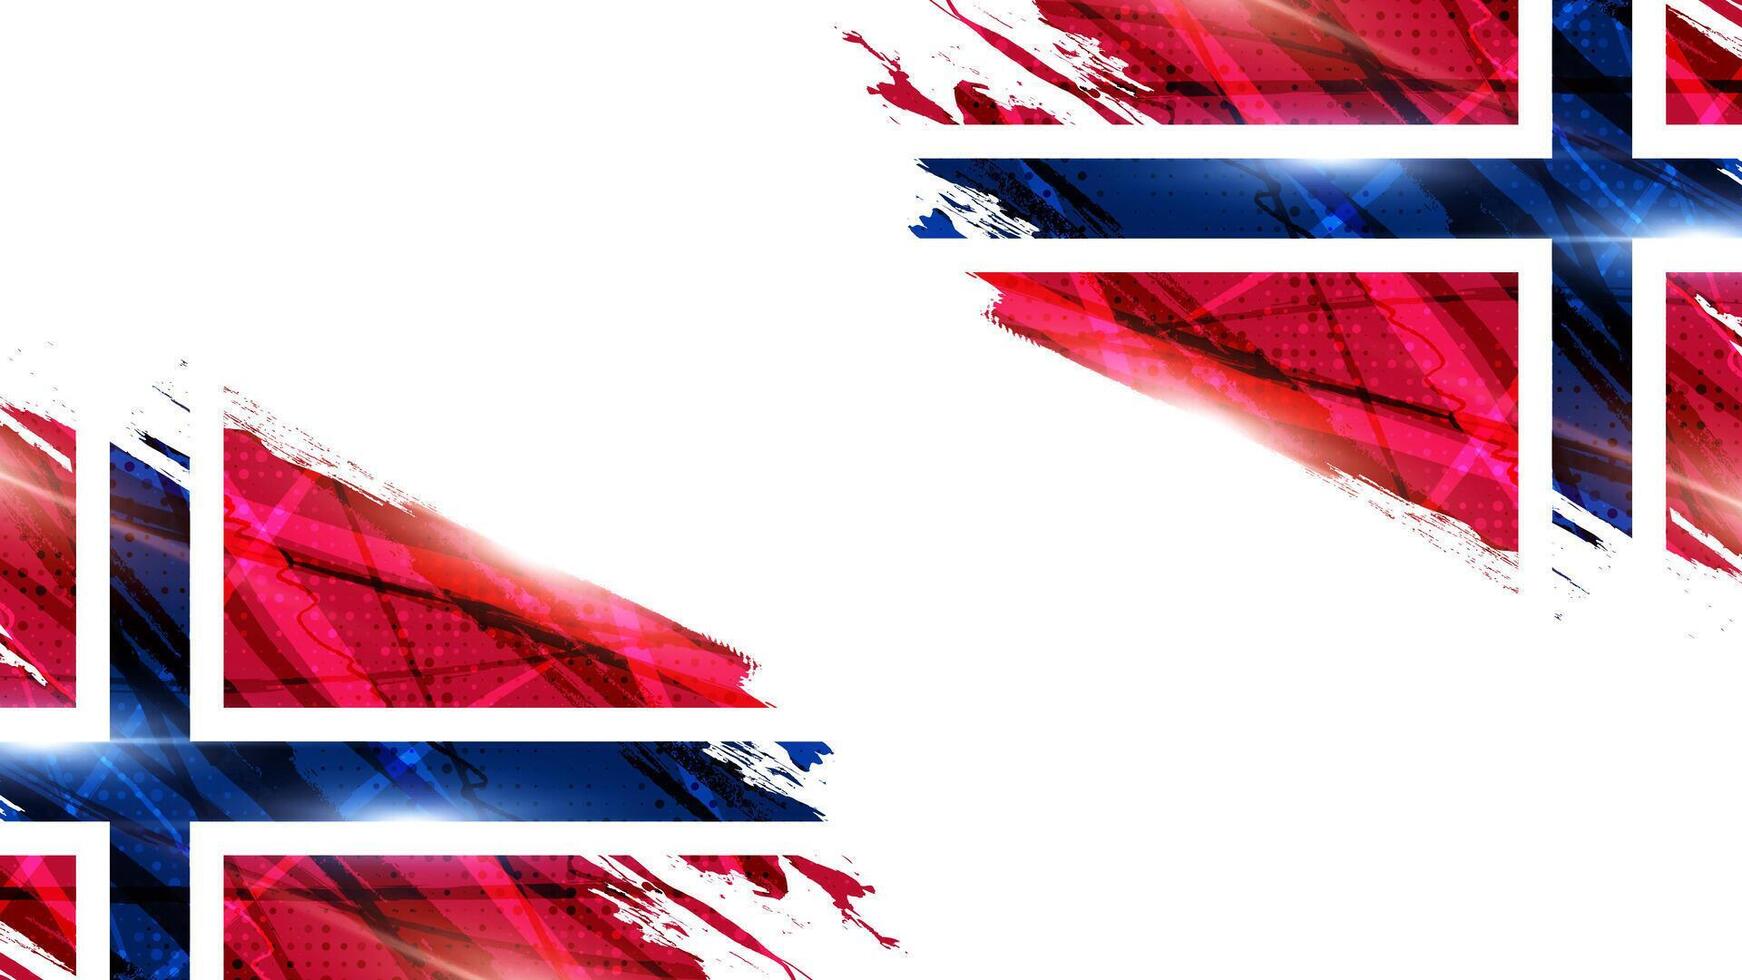 Noorwegen vlag in borstel verf stijl met halftone effect. Noorwegen nationaal vlag achtergrond met grunge concept vector